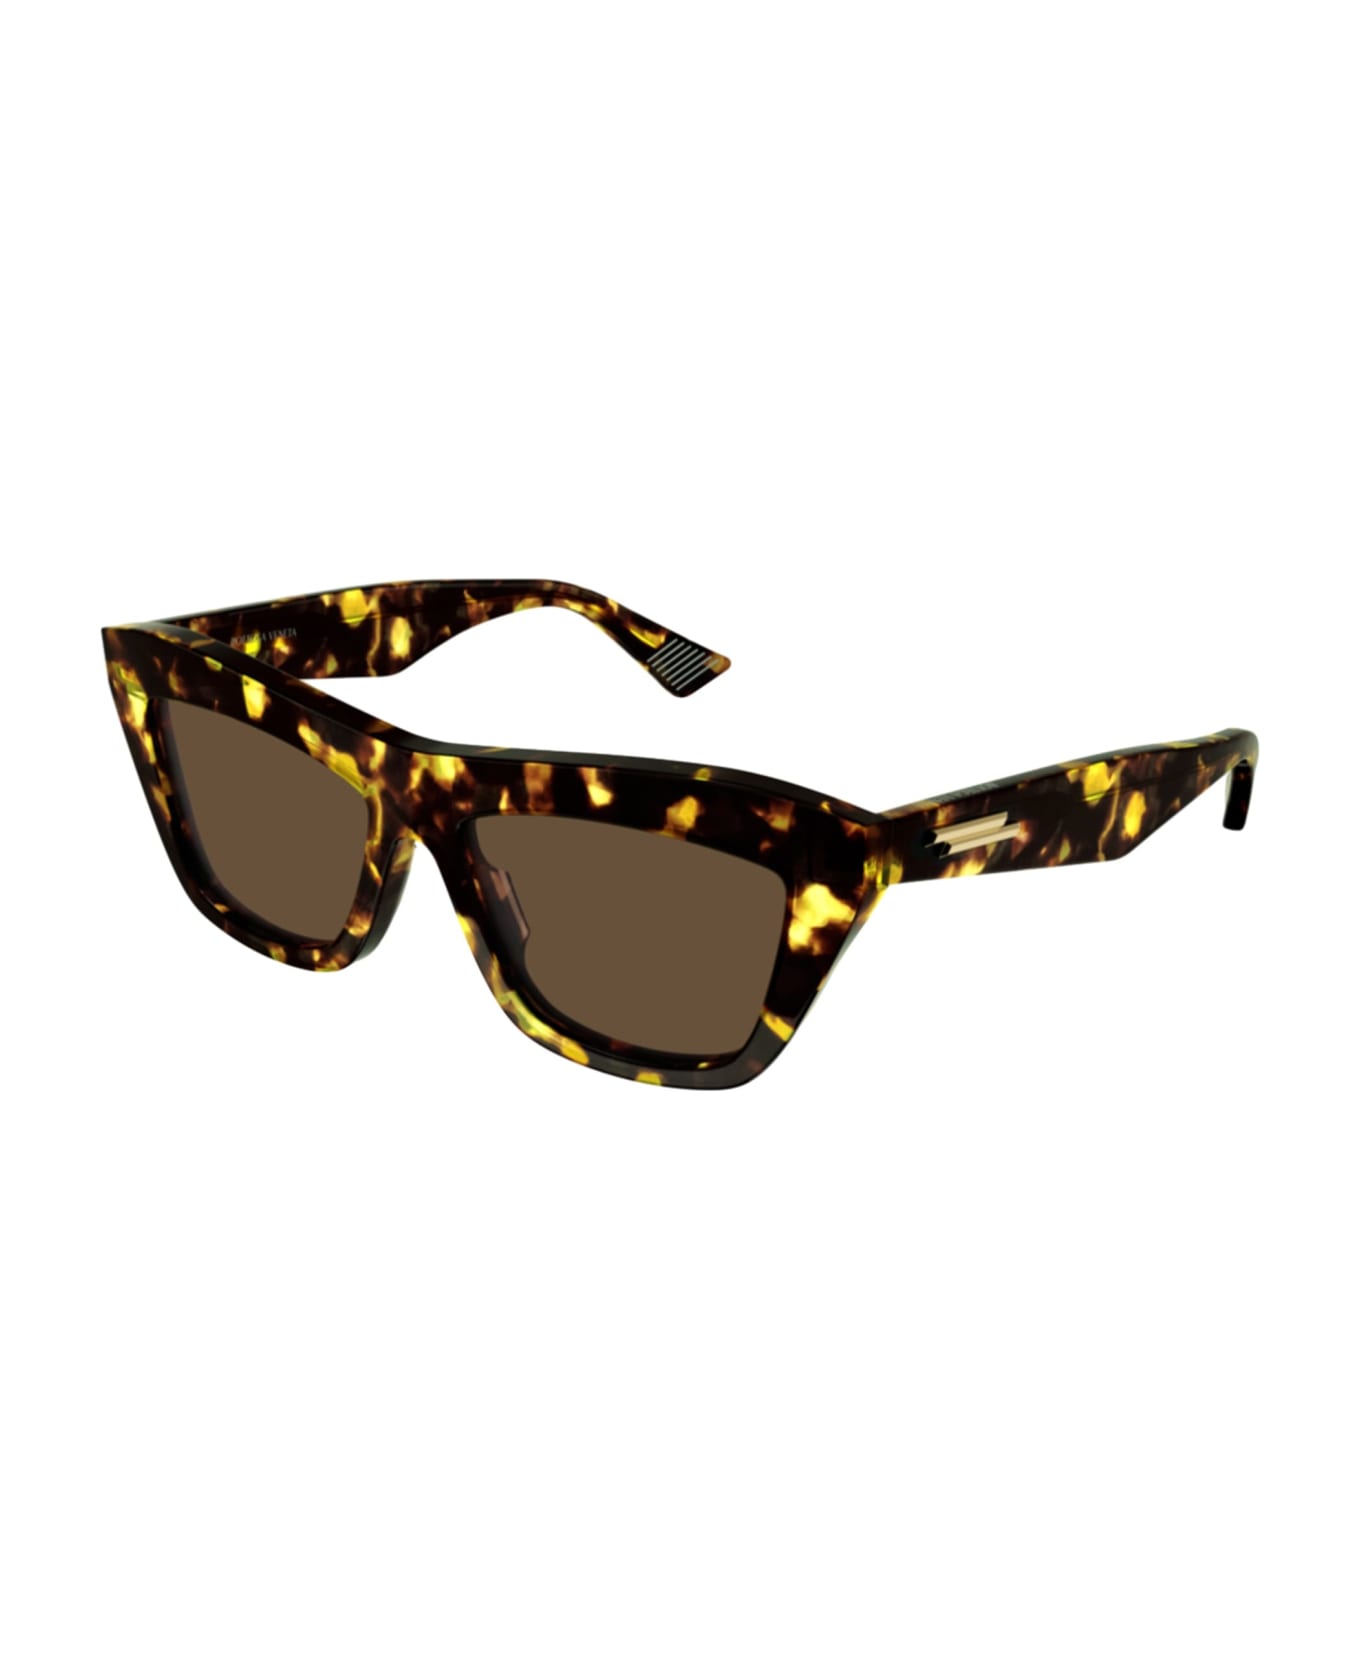 Bottega Veneta Eyewear Bv1121s-002 - Havana Sunglasses - Havana